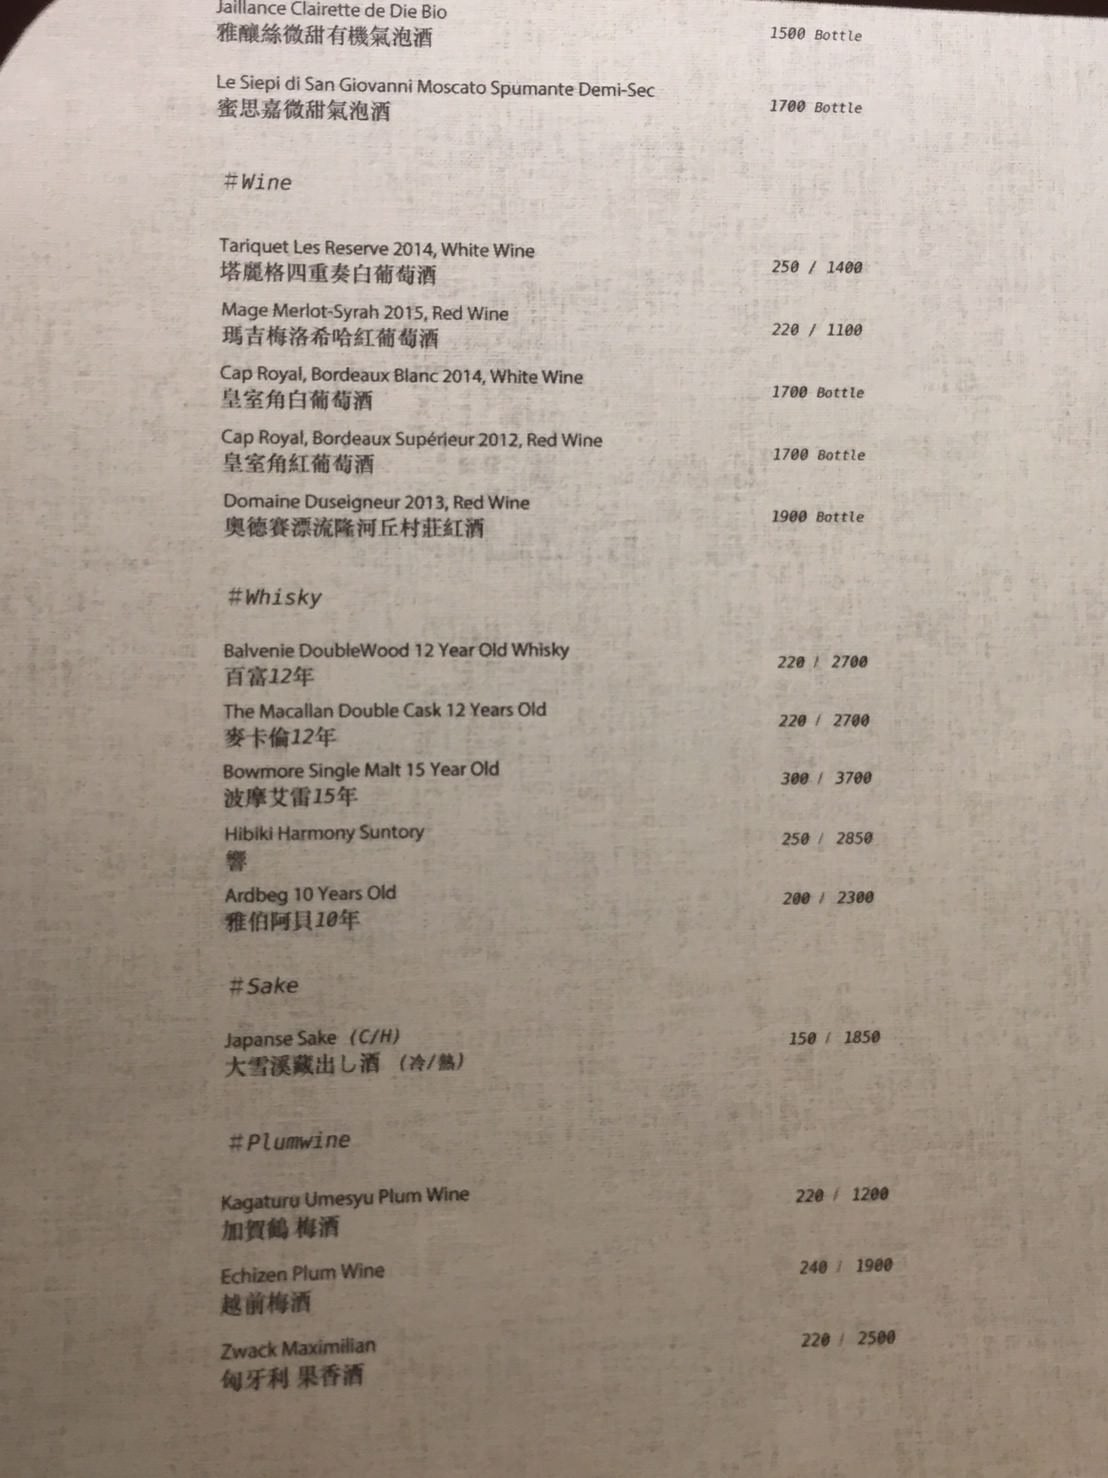 [台北]信義區 101世貿捷運站 聚會推薦 IG打卡熱門餐酒館 台北包場餐廳 gumgum beer & wings雞翅啤酒吧